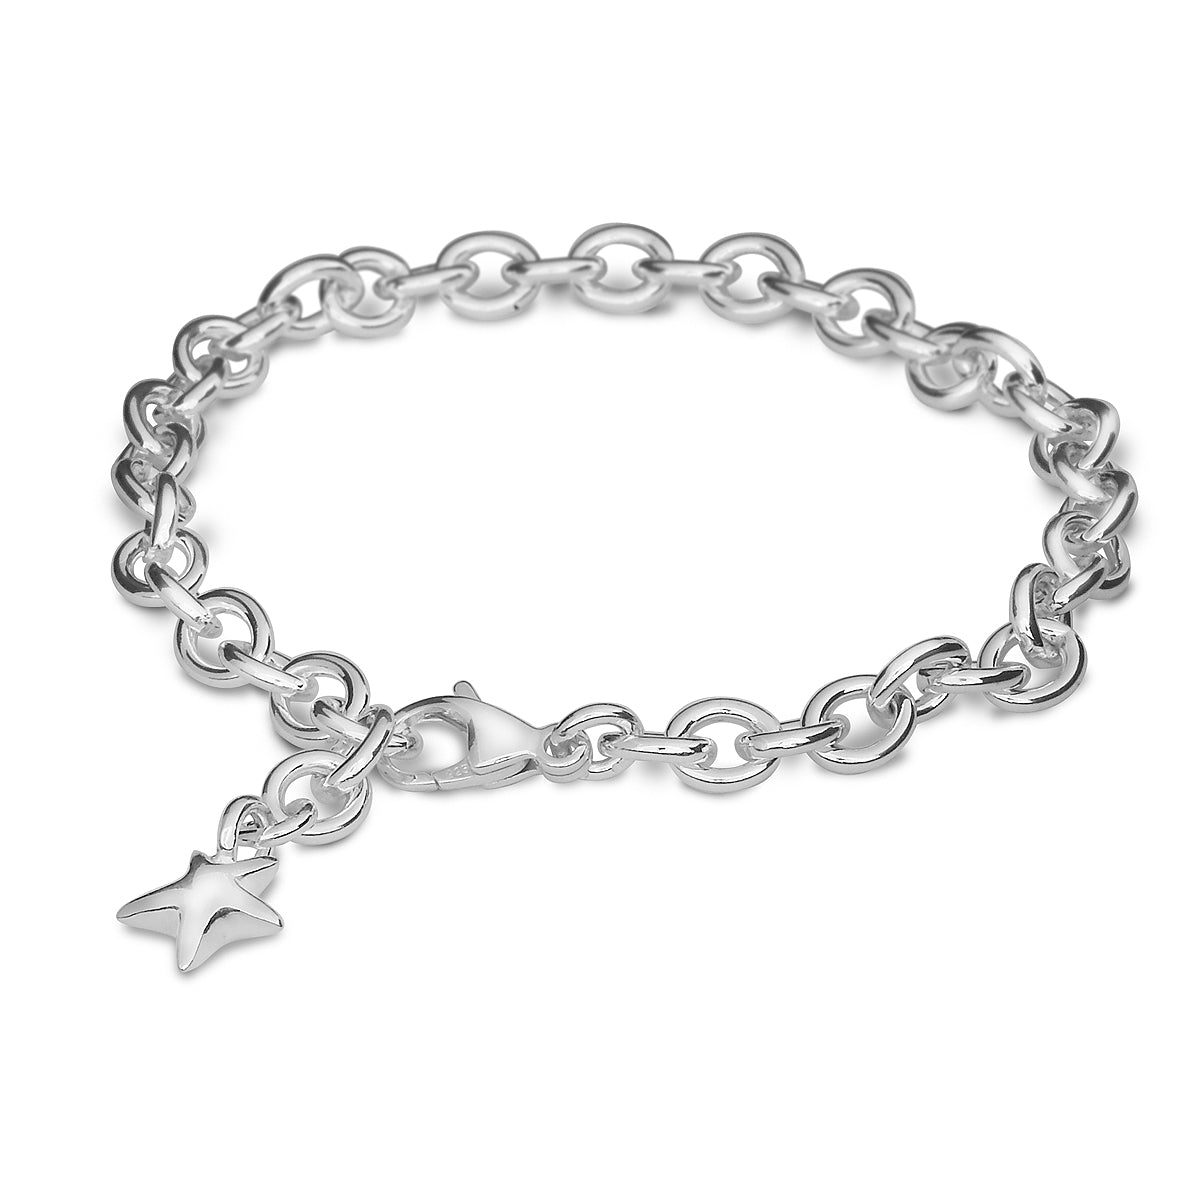 Adjustable Solid Silver Charm Bracelet for Girls